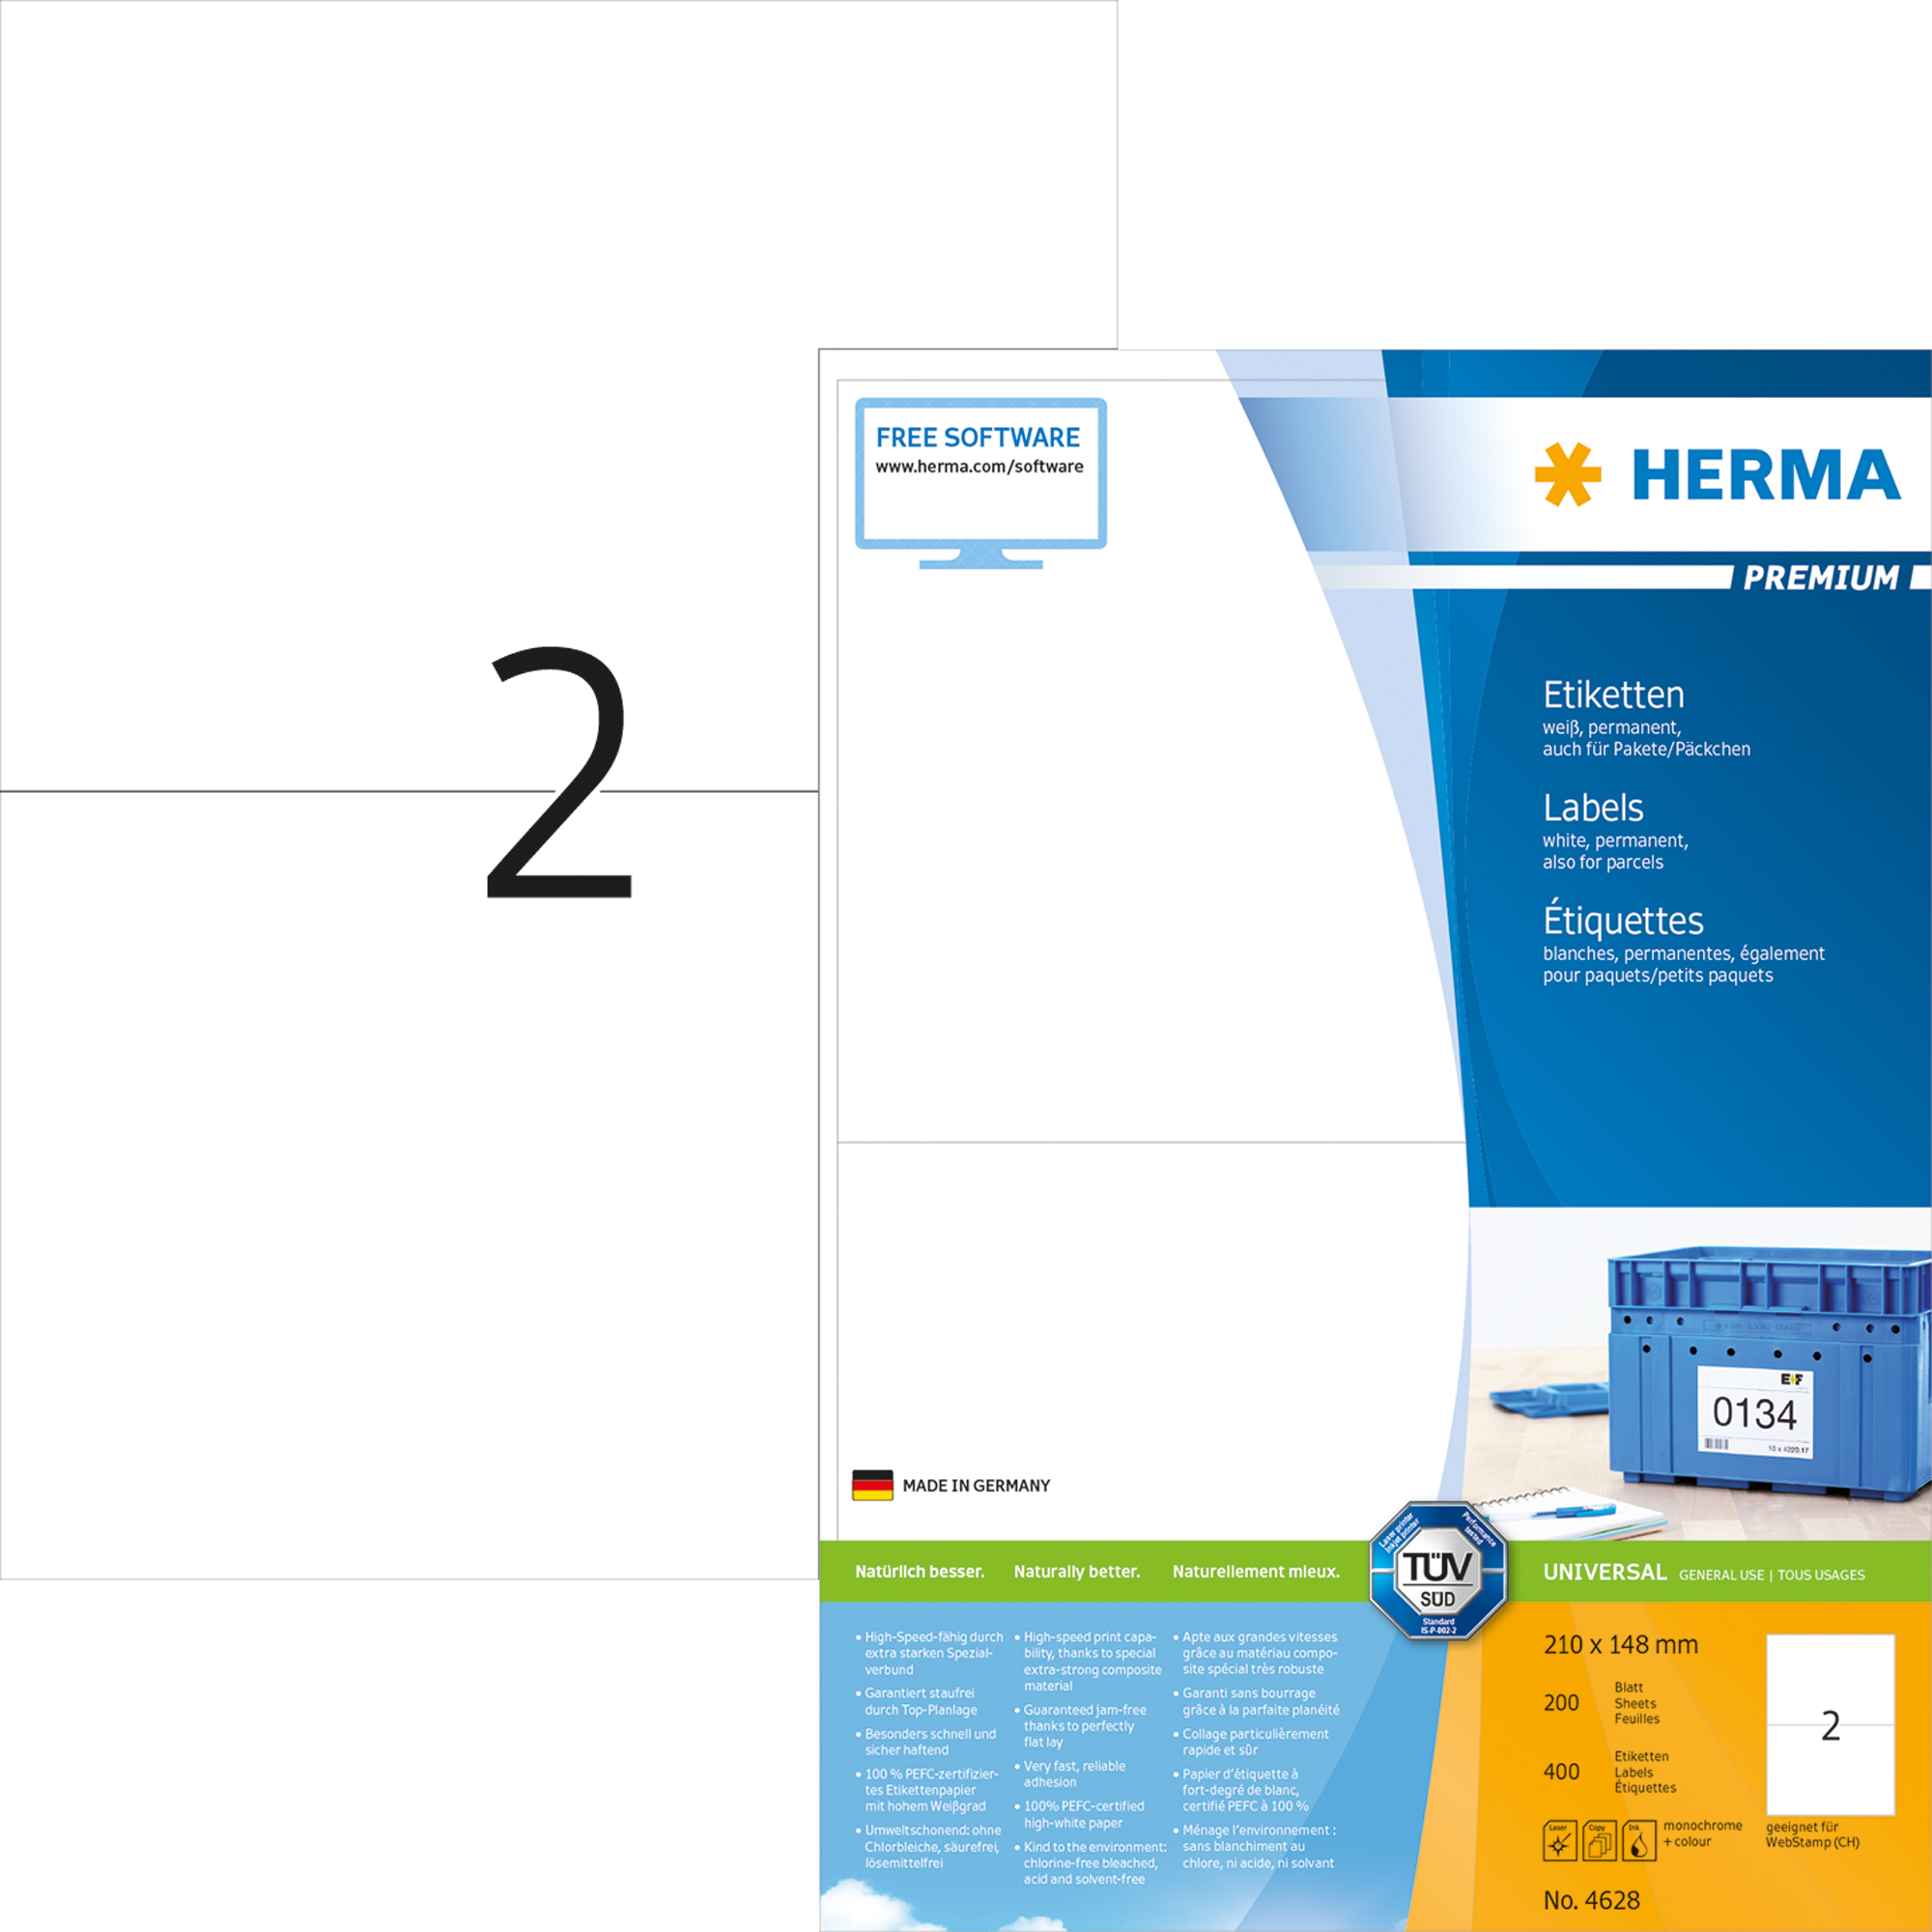 HERMA Universaletikett Premium weiß, 210 x 148 mm